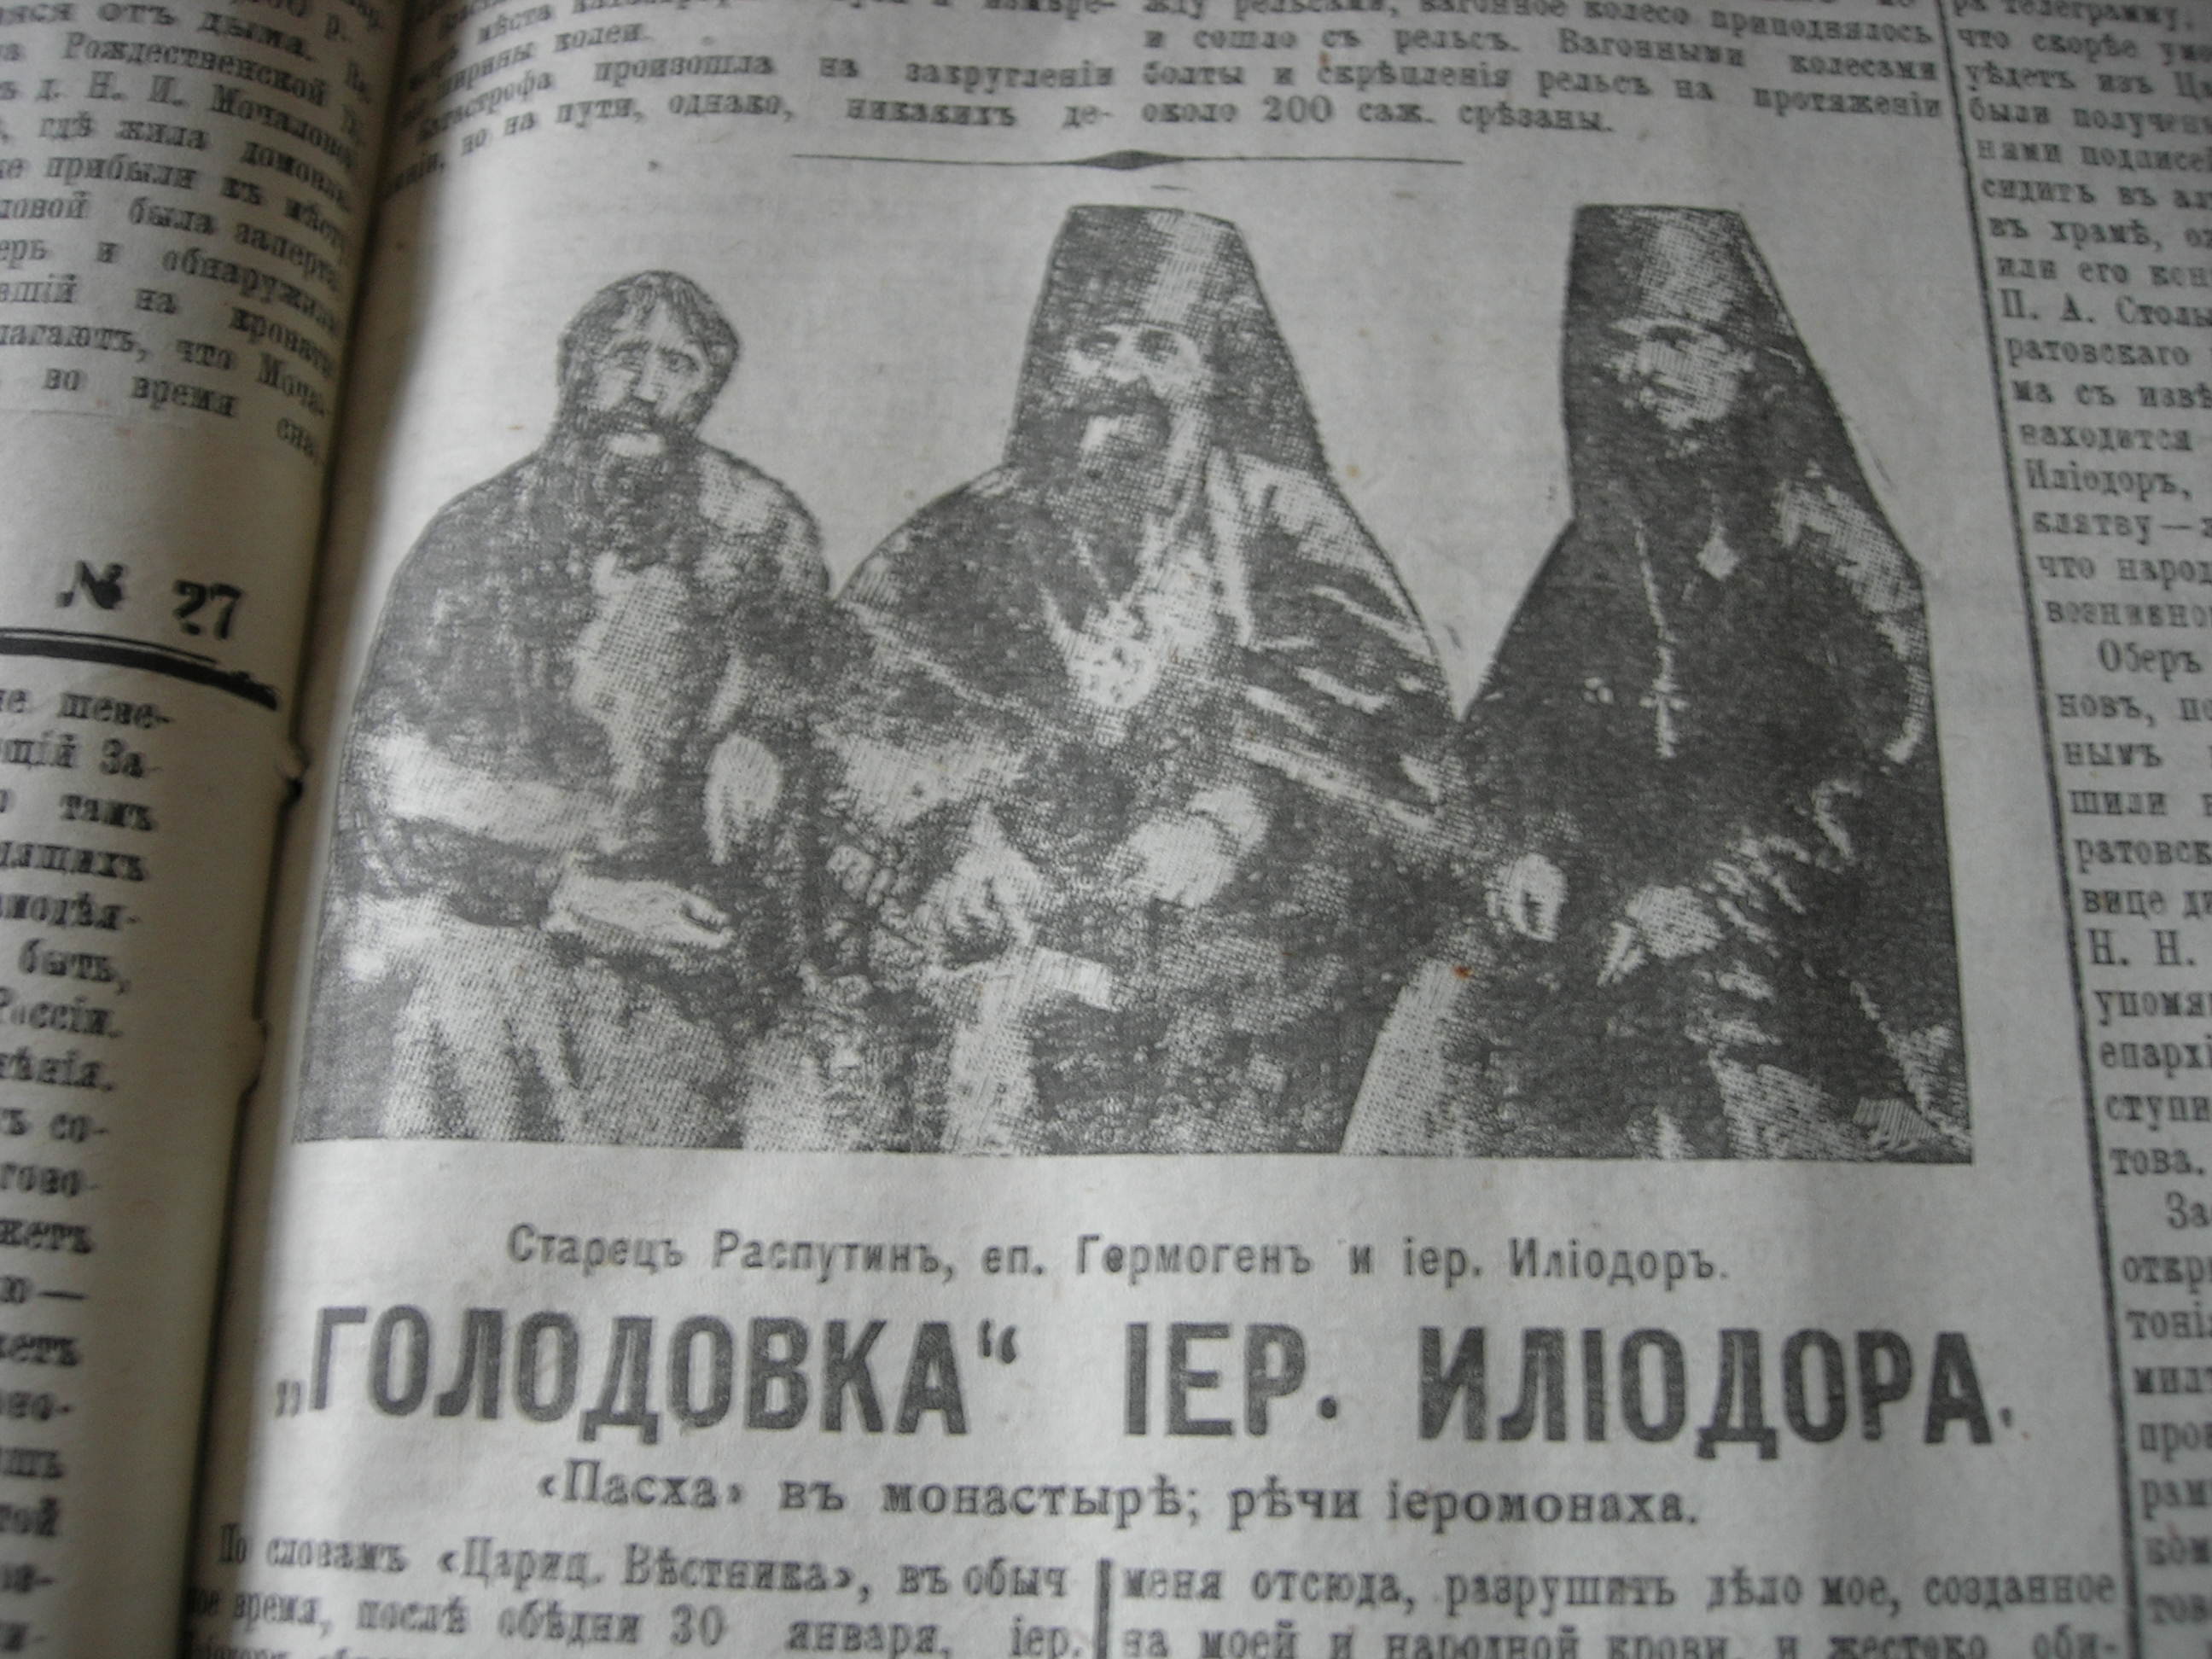 Знаменитая фотография епископа Гермогена, иеромонаха Илиодора и Распутина едва узнаваема в газетном варианте